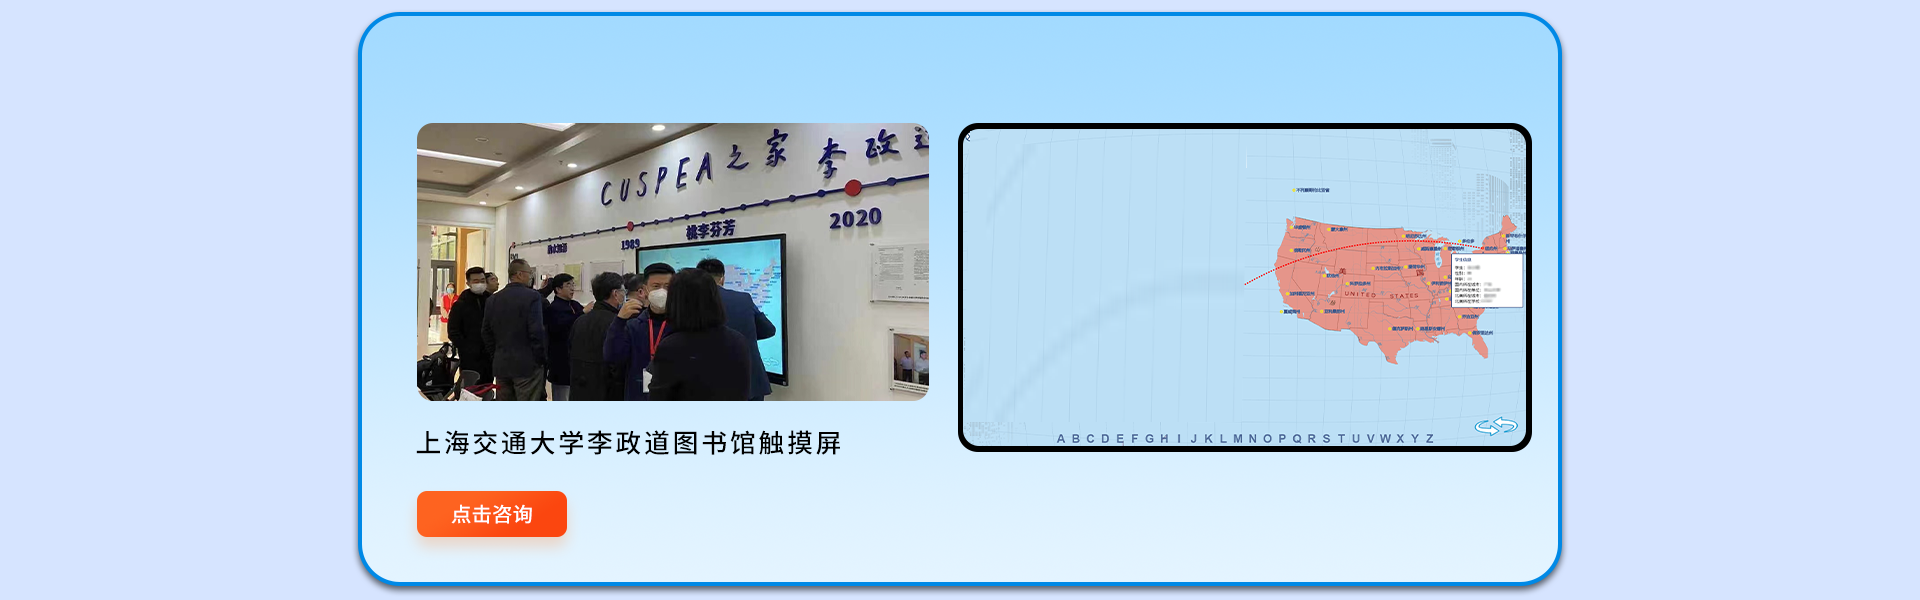 上海网润软件-专注小程序开发